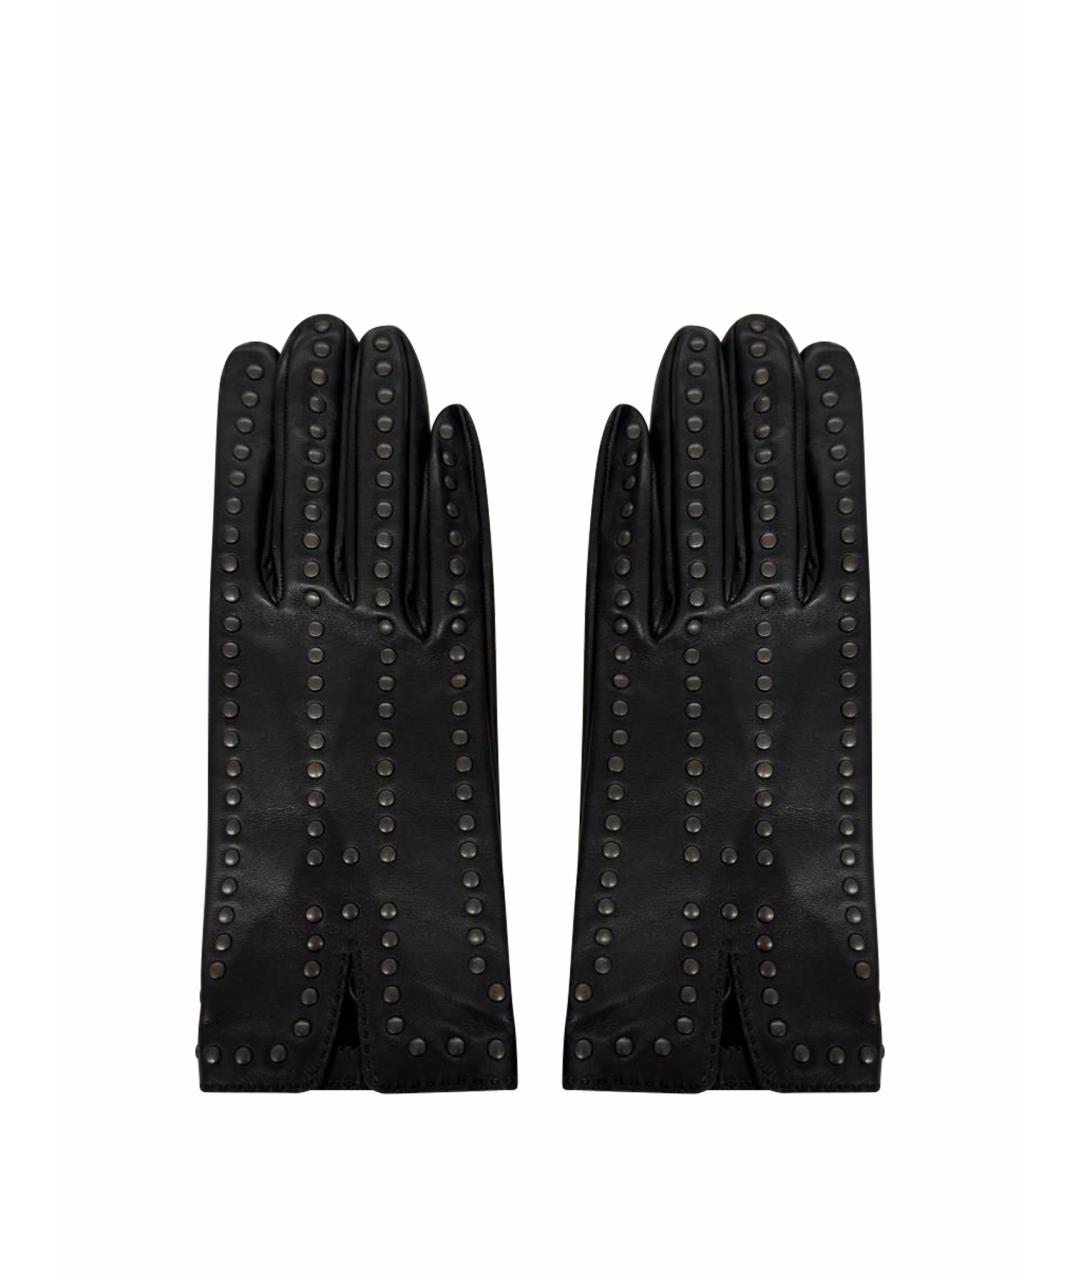 HERMES Черные кожаные перчатки, фото 1